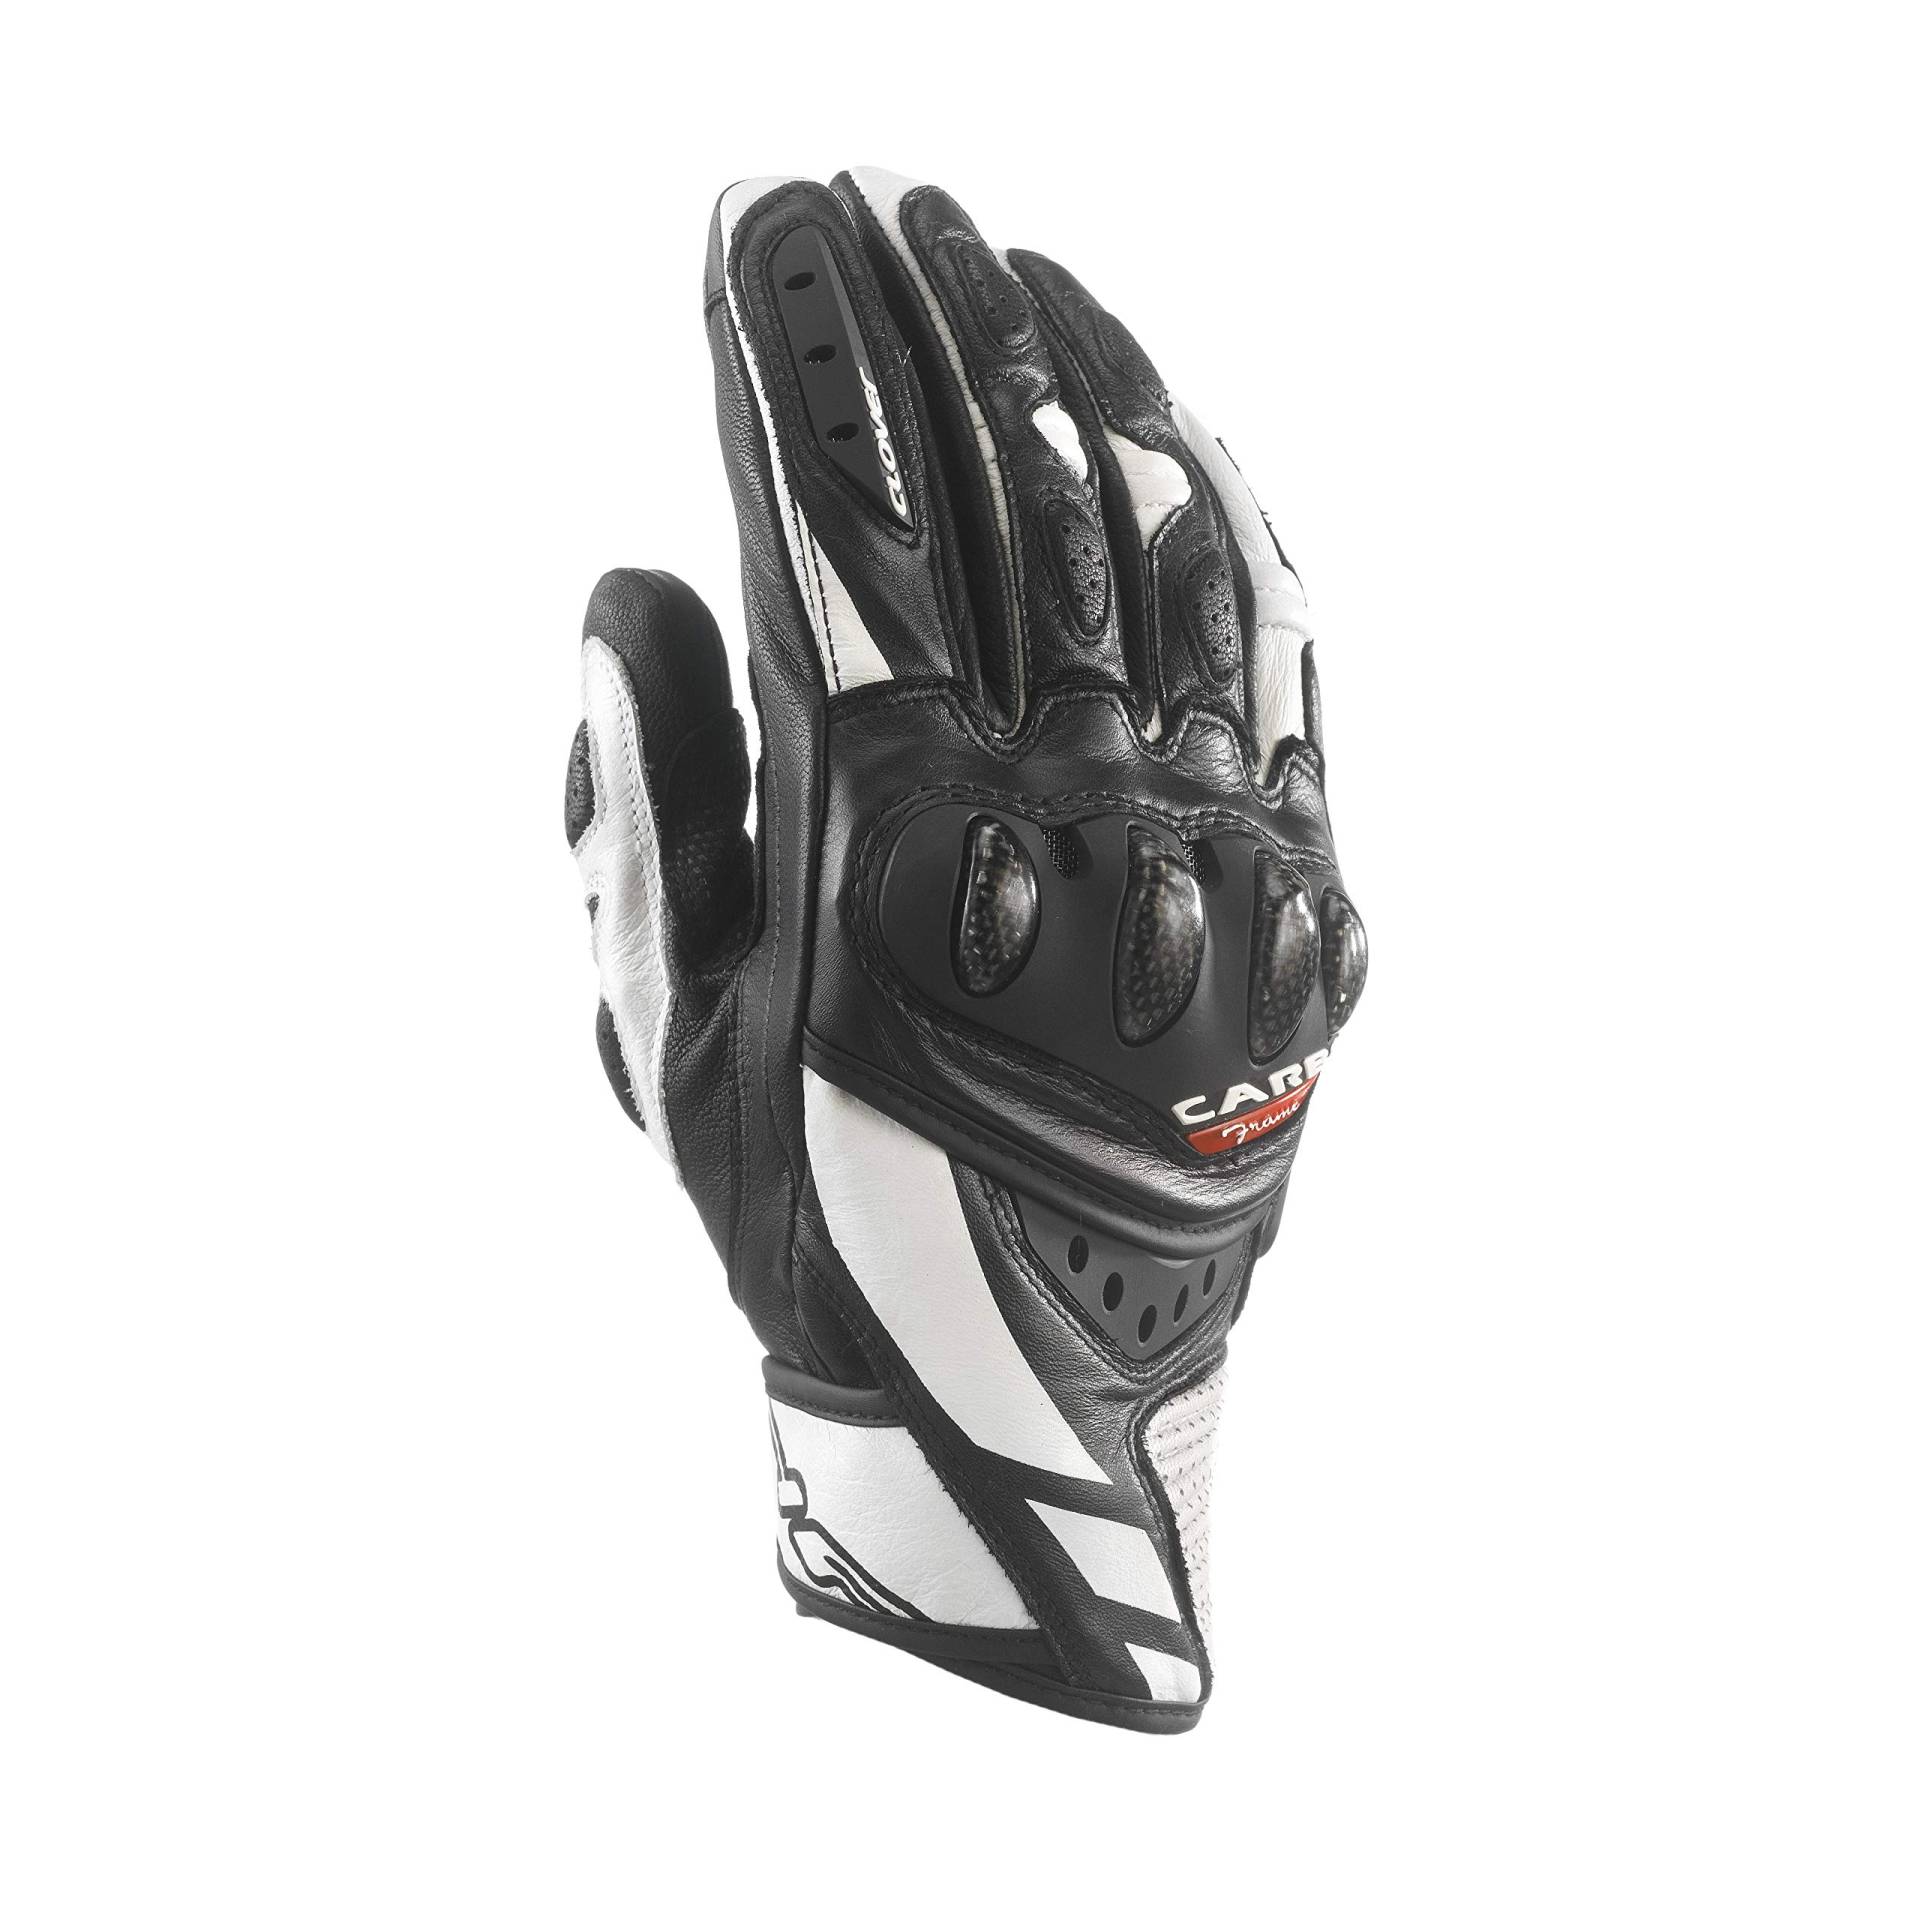 Clover rsc-3 Handschuh Sport Leder kurz, schwarz/weiß, Größe L von Clover